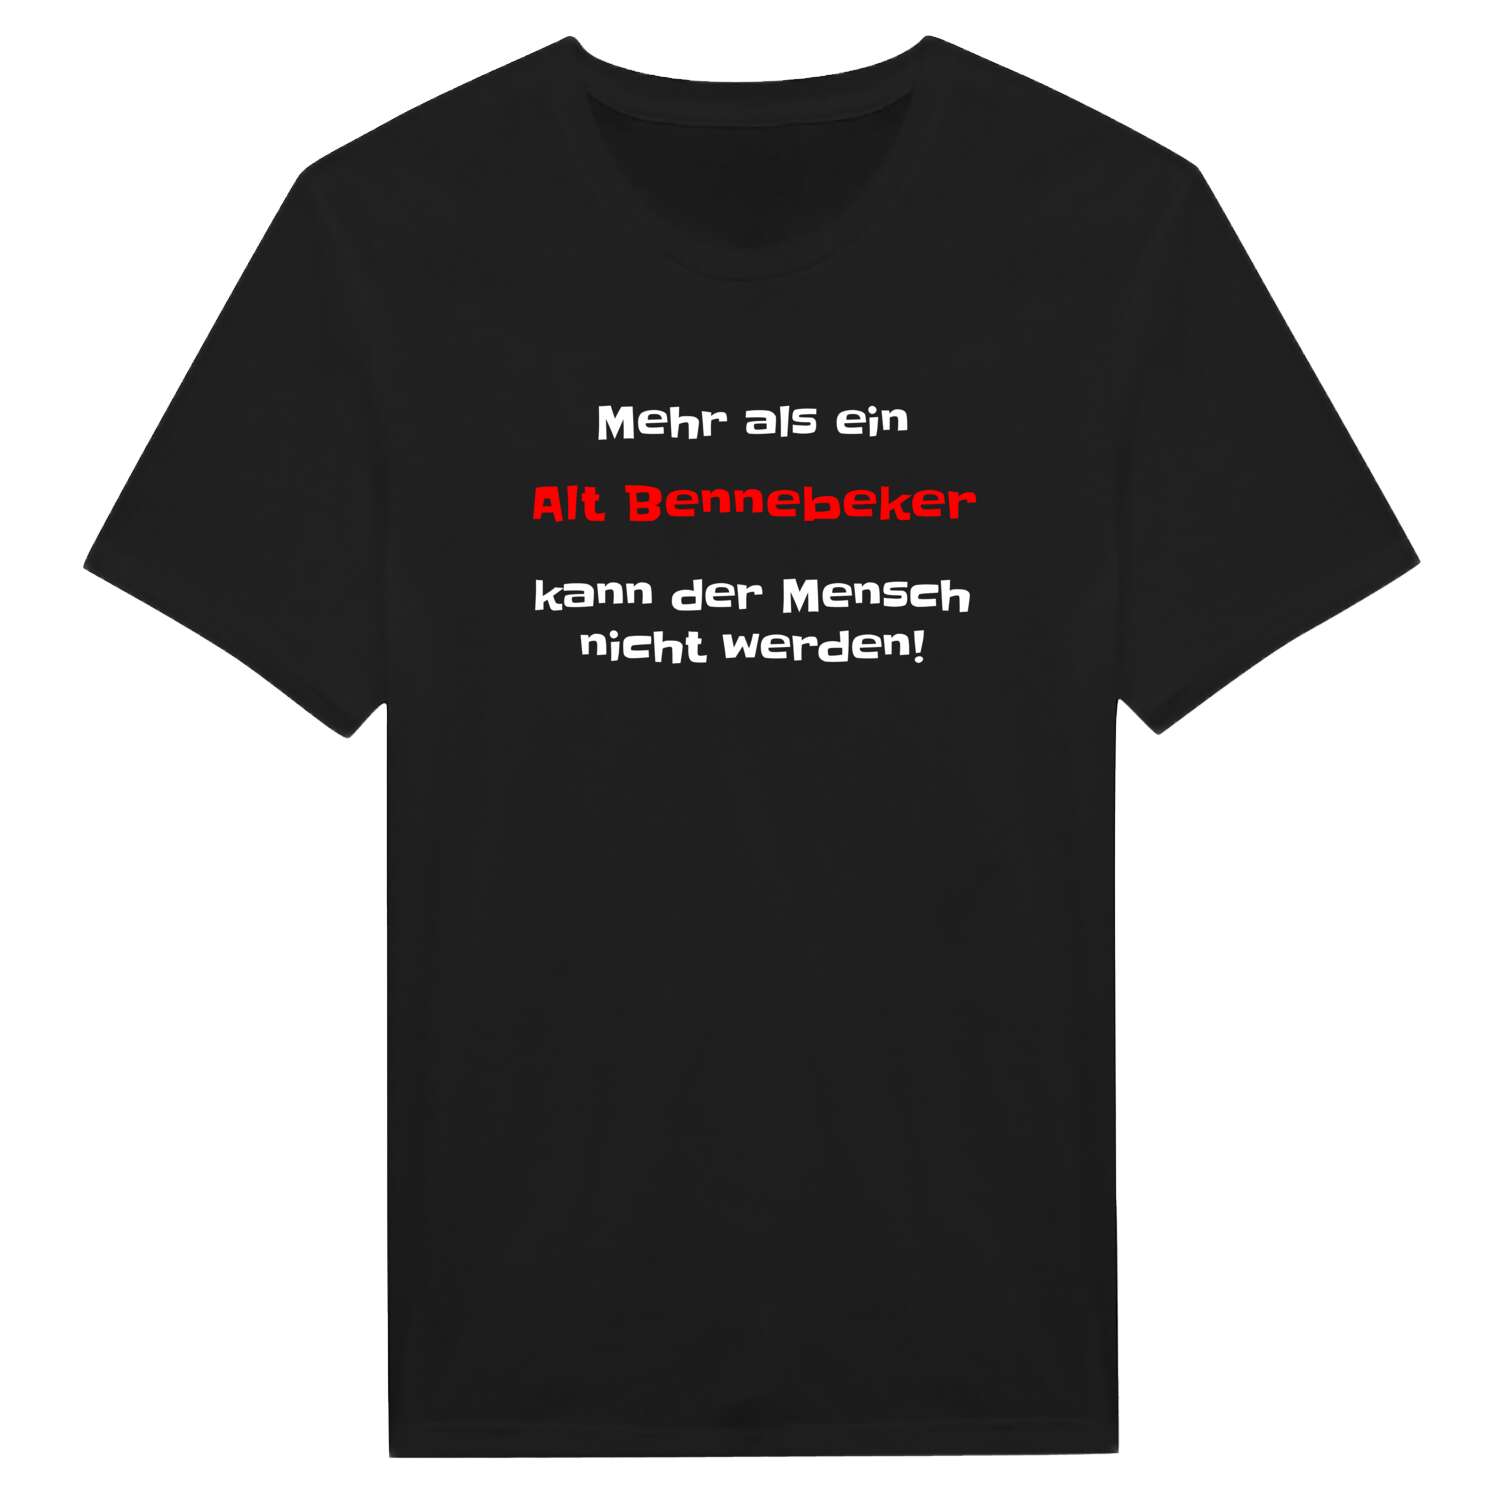 Alt Bennebek T-Shirt »Mehr als ein«